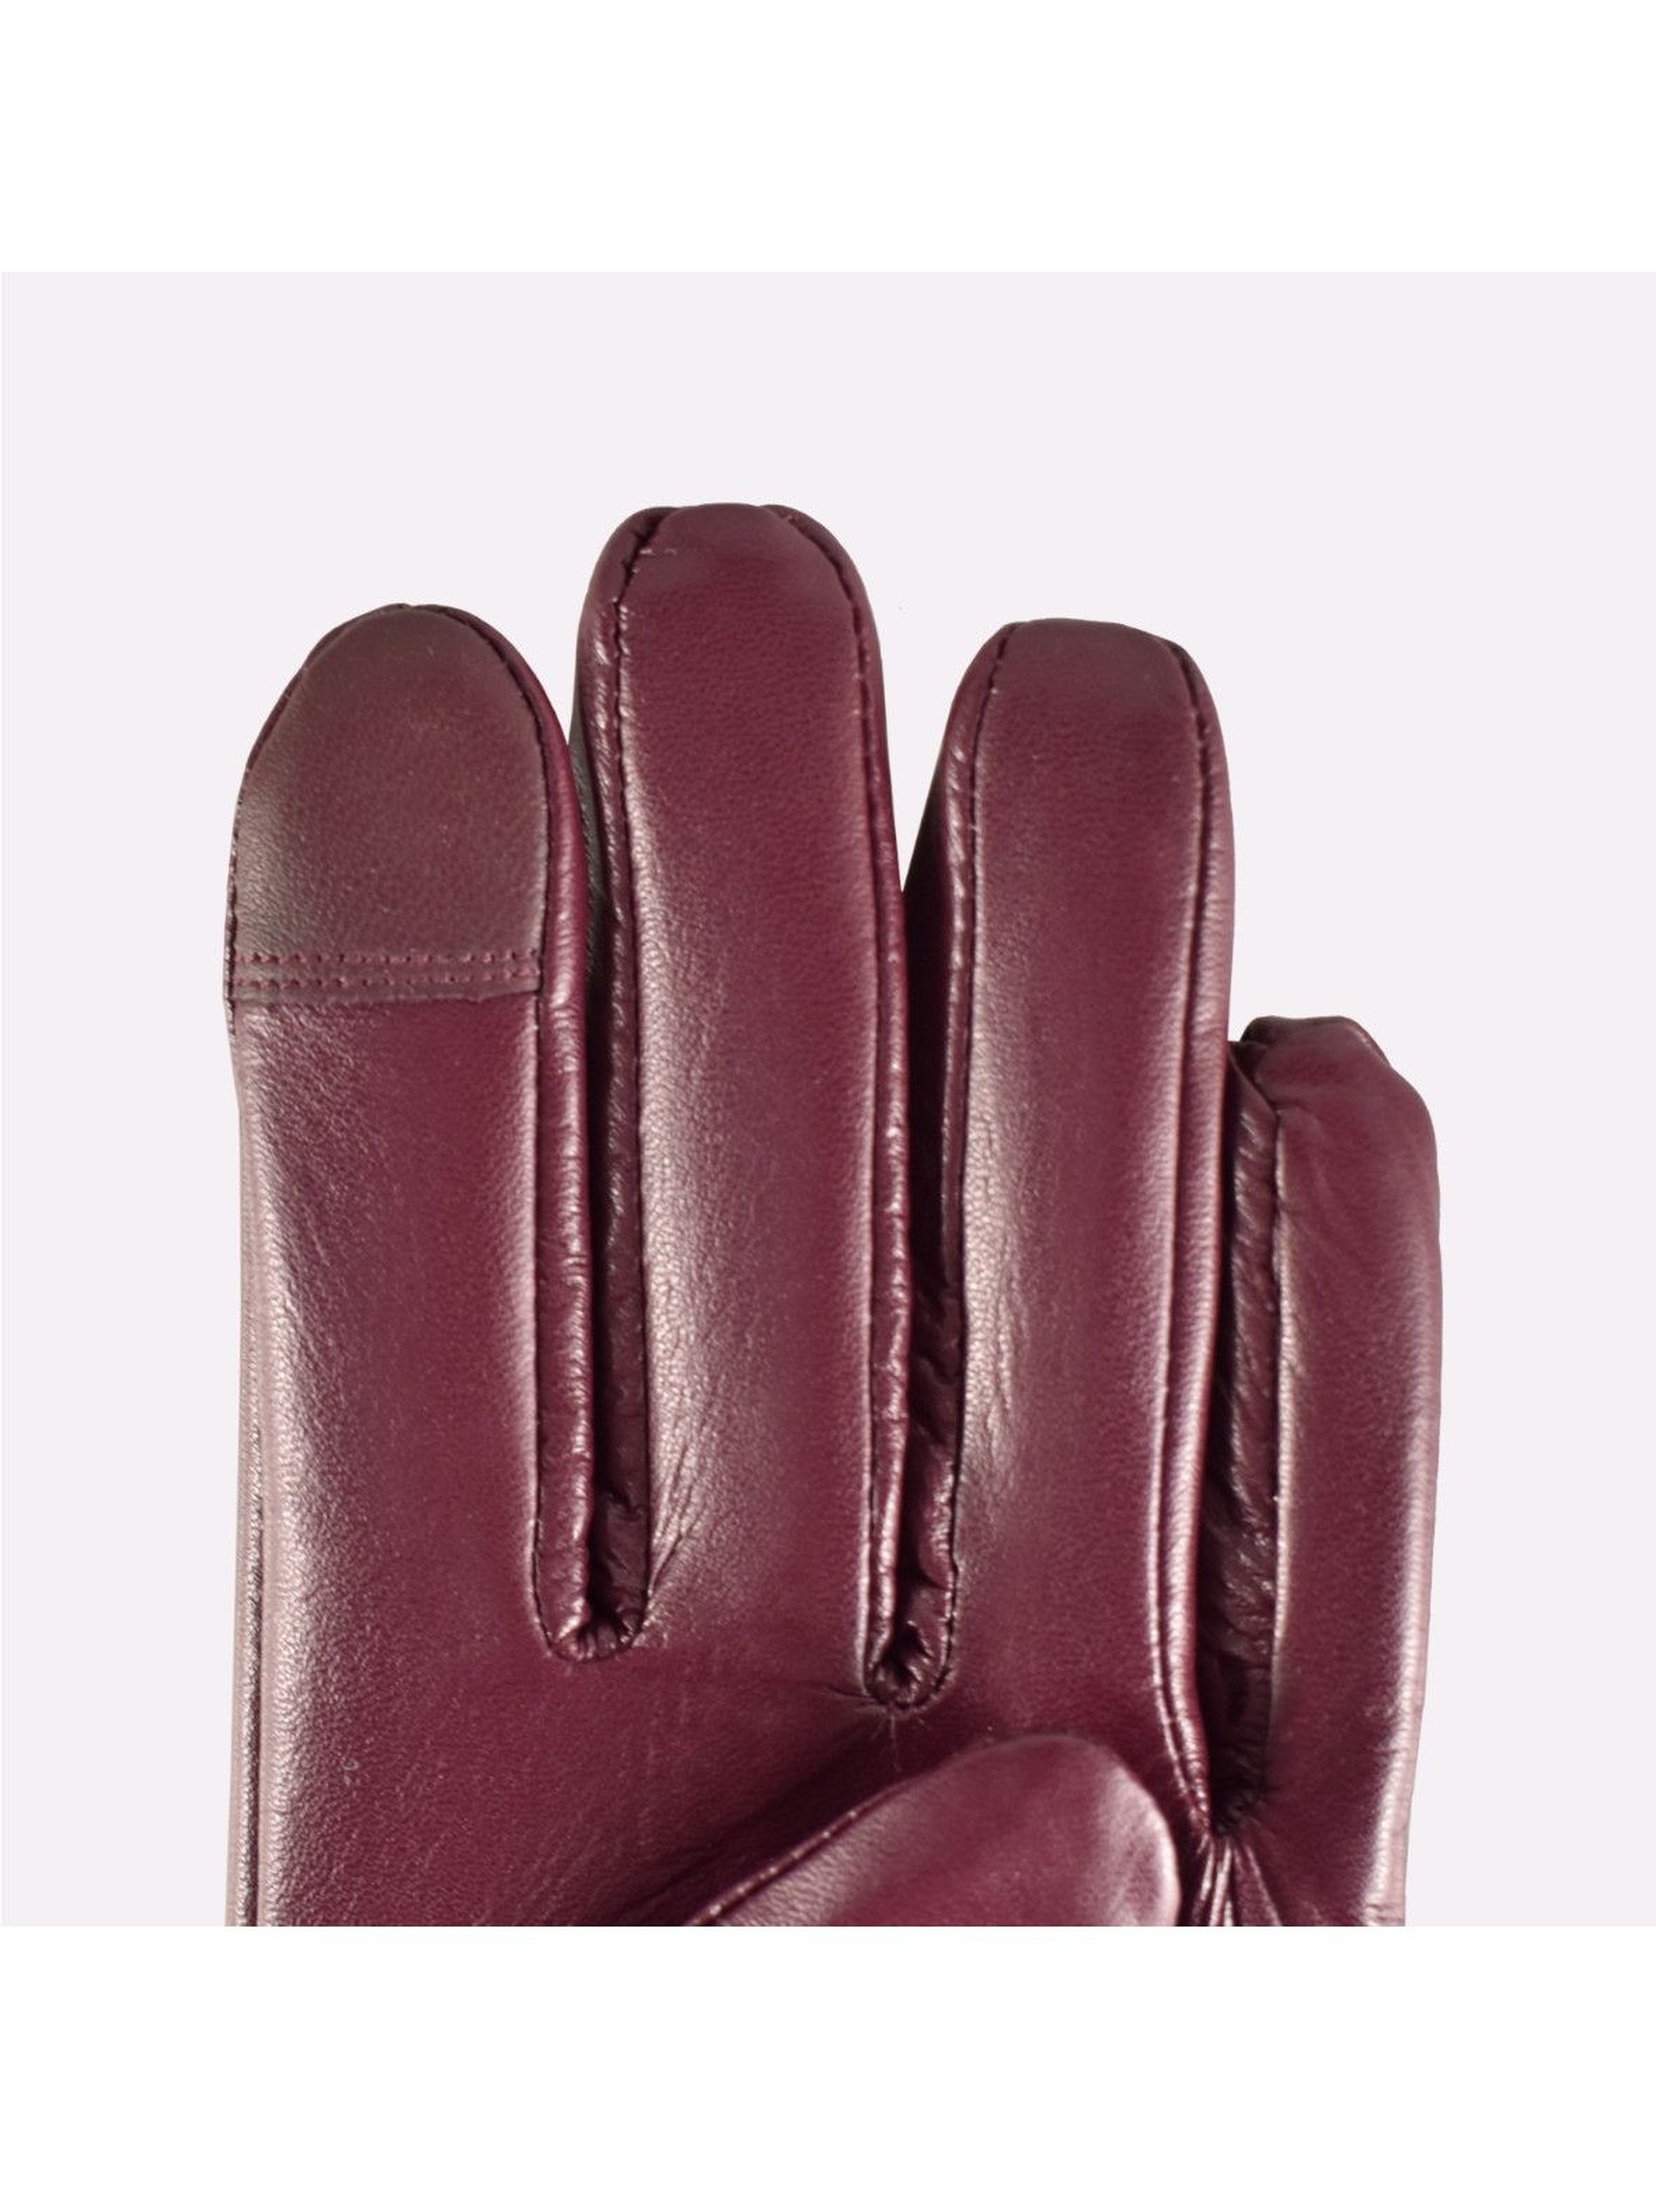 Rękawiczki damskie skórzane antybakteryjne - bordowe